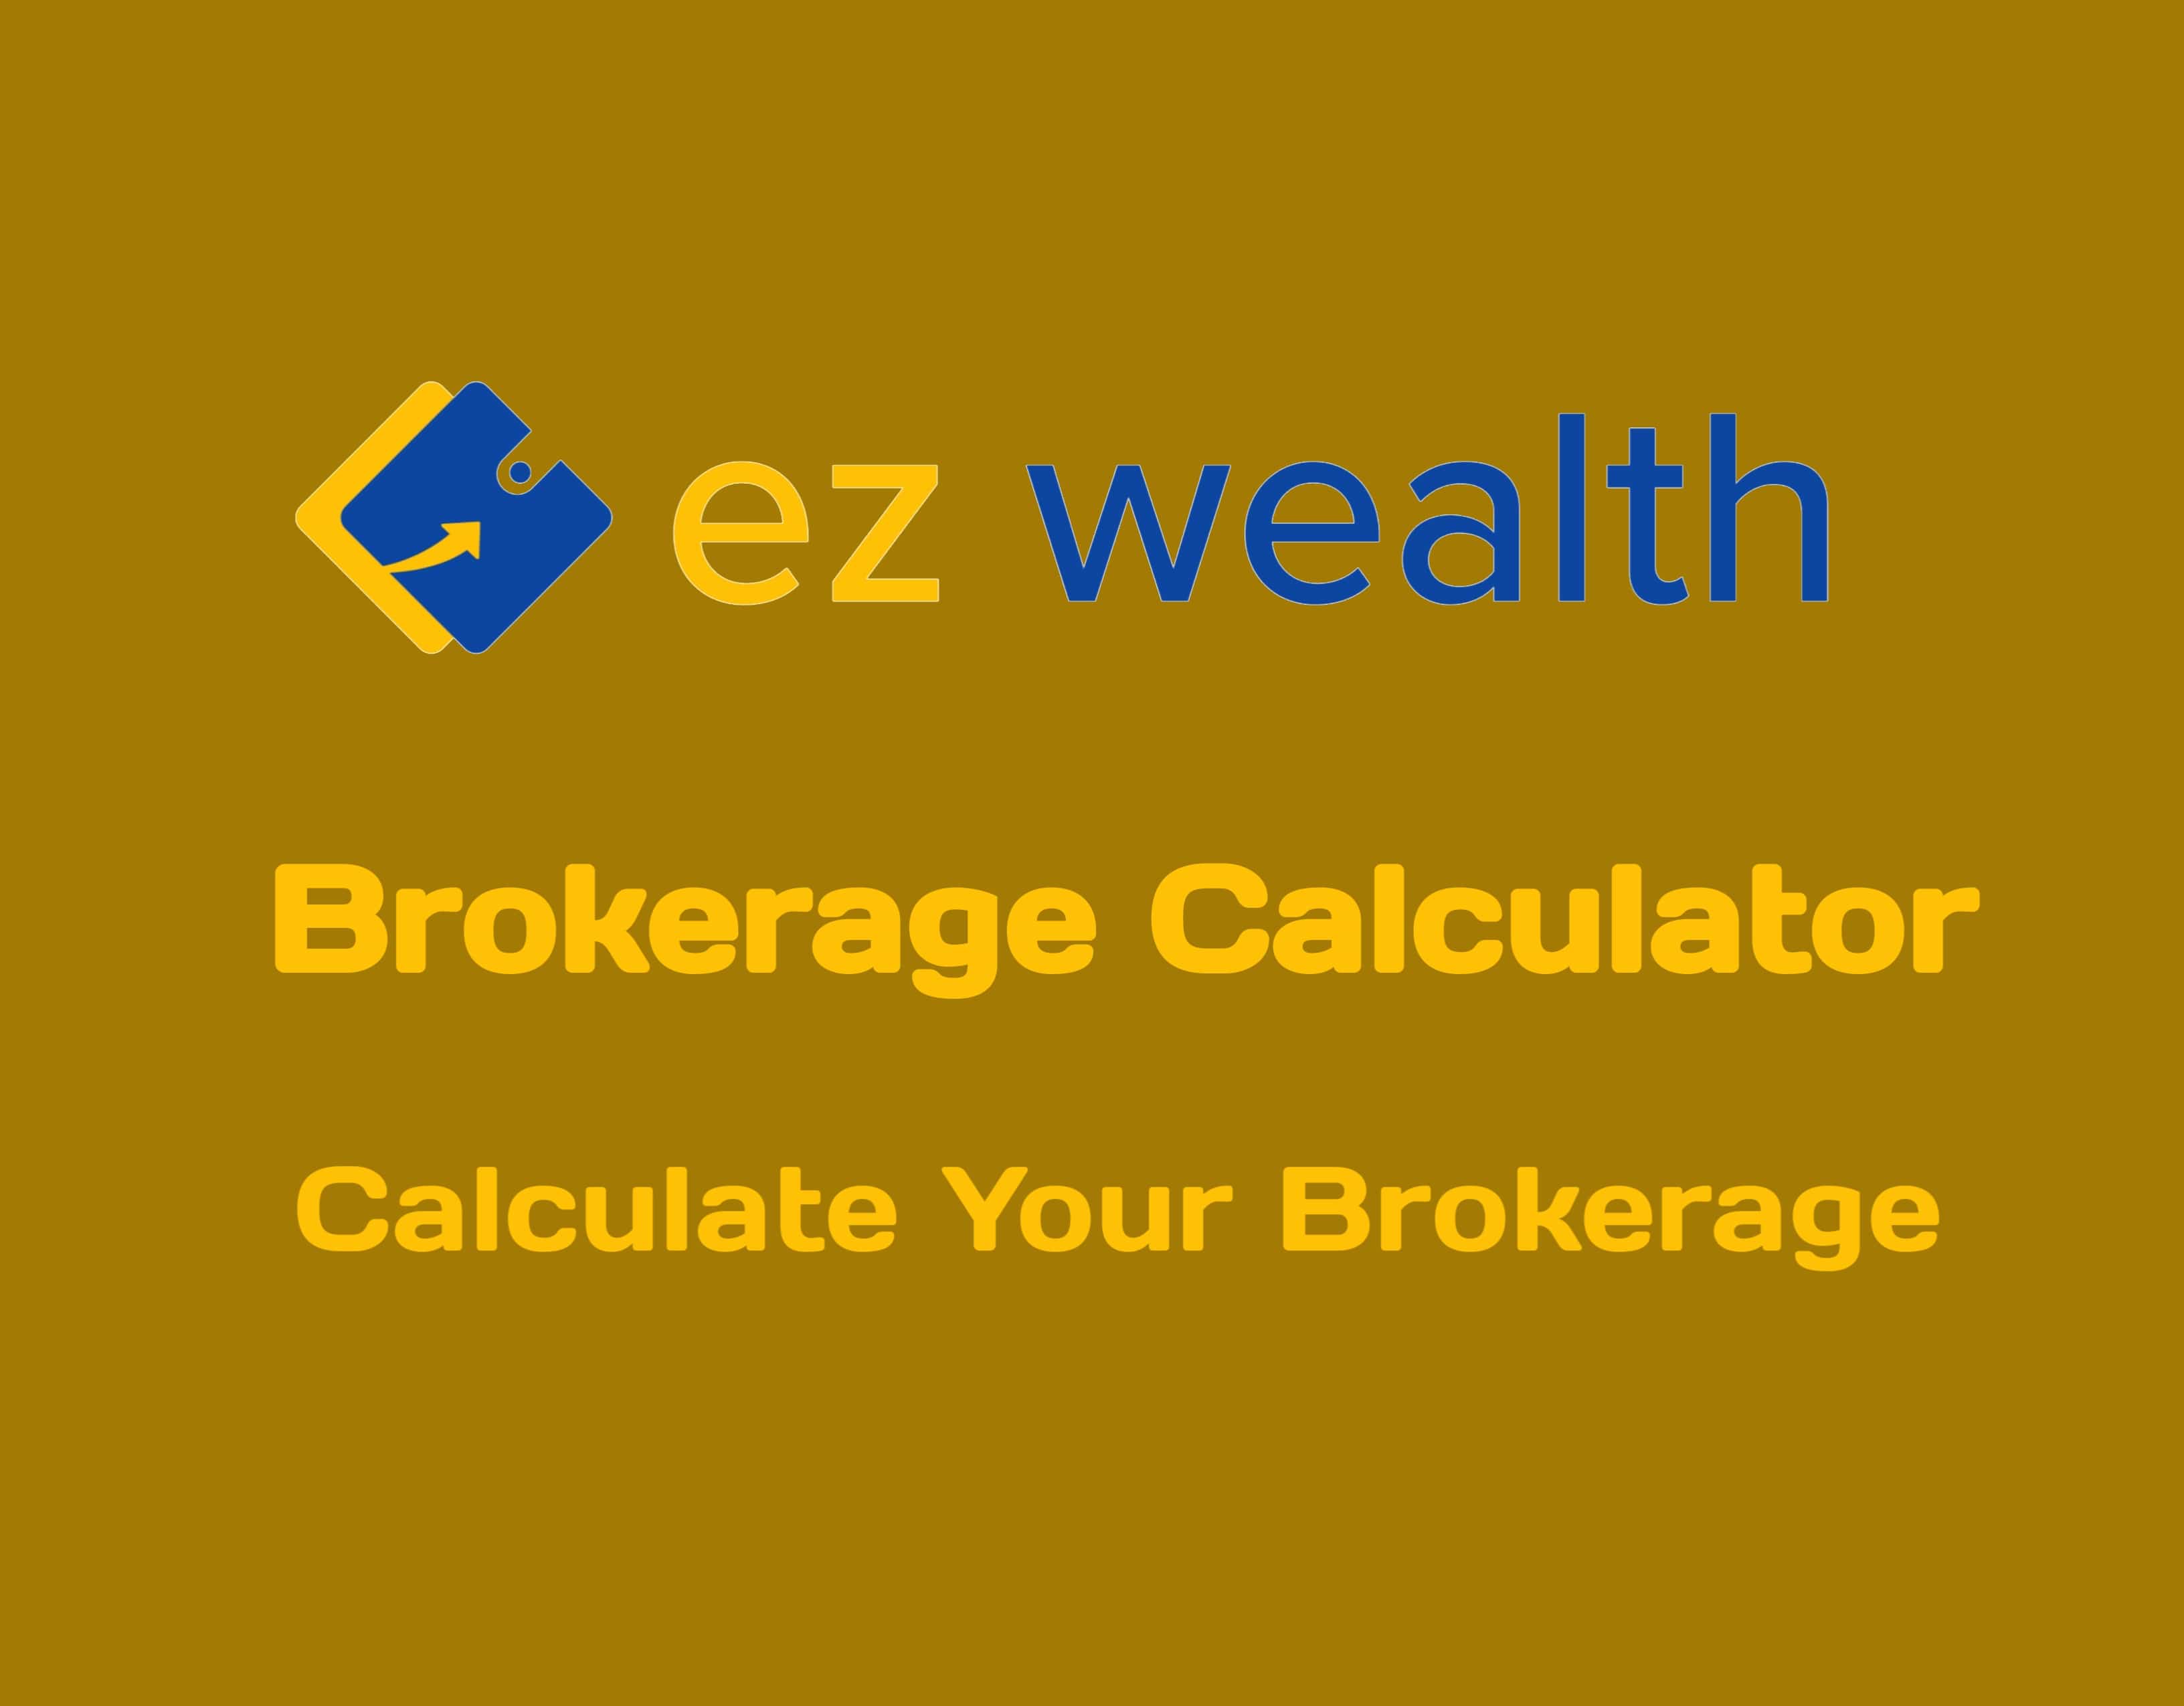 EZ Wealth Brokerage Calculator